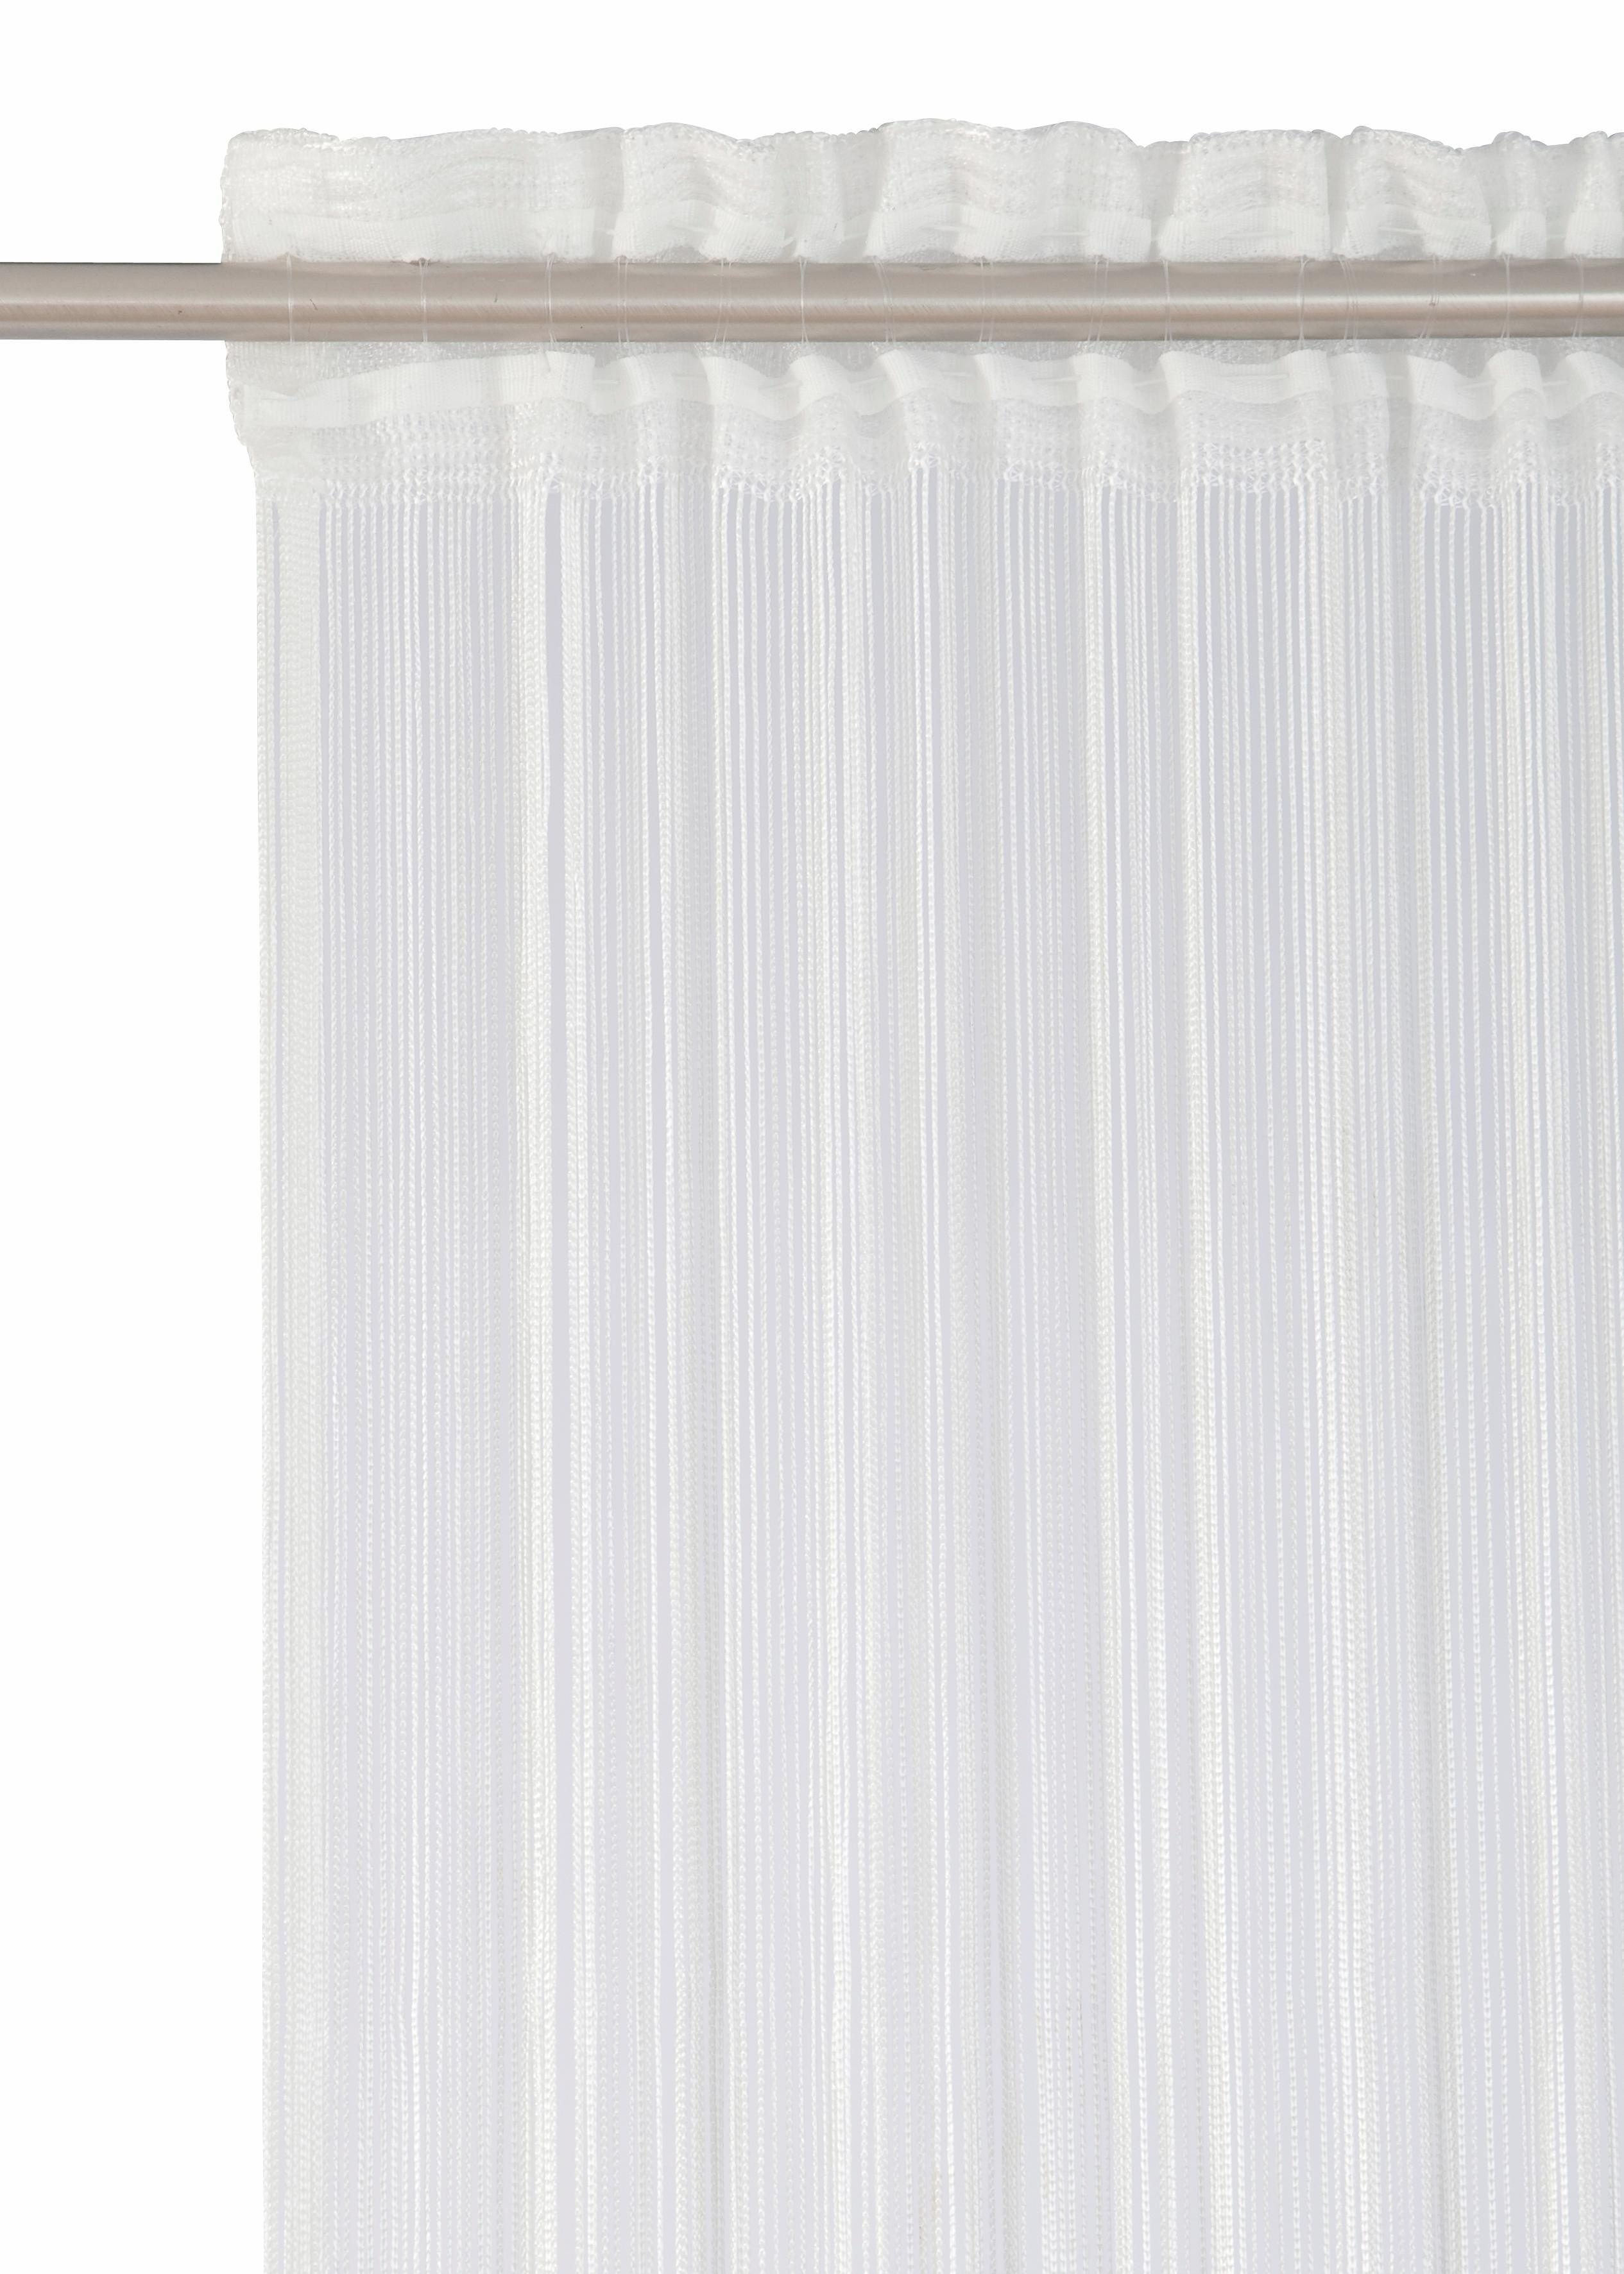 Fadenvorhang Rebecca, Weckbrodt, reinweiß halbtransparent, Fadengardine, kürzbar Insektenschutz, (1 Multifunktionsband Gardine, St), transparent